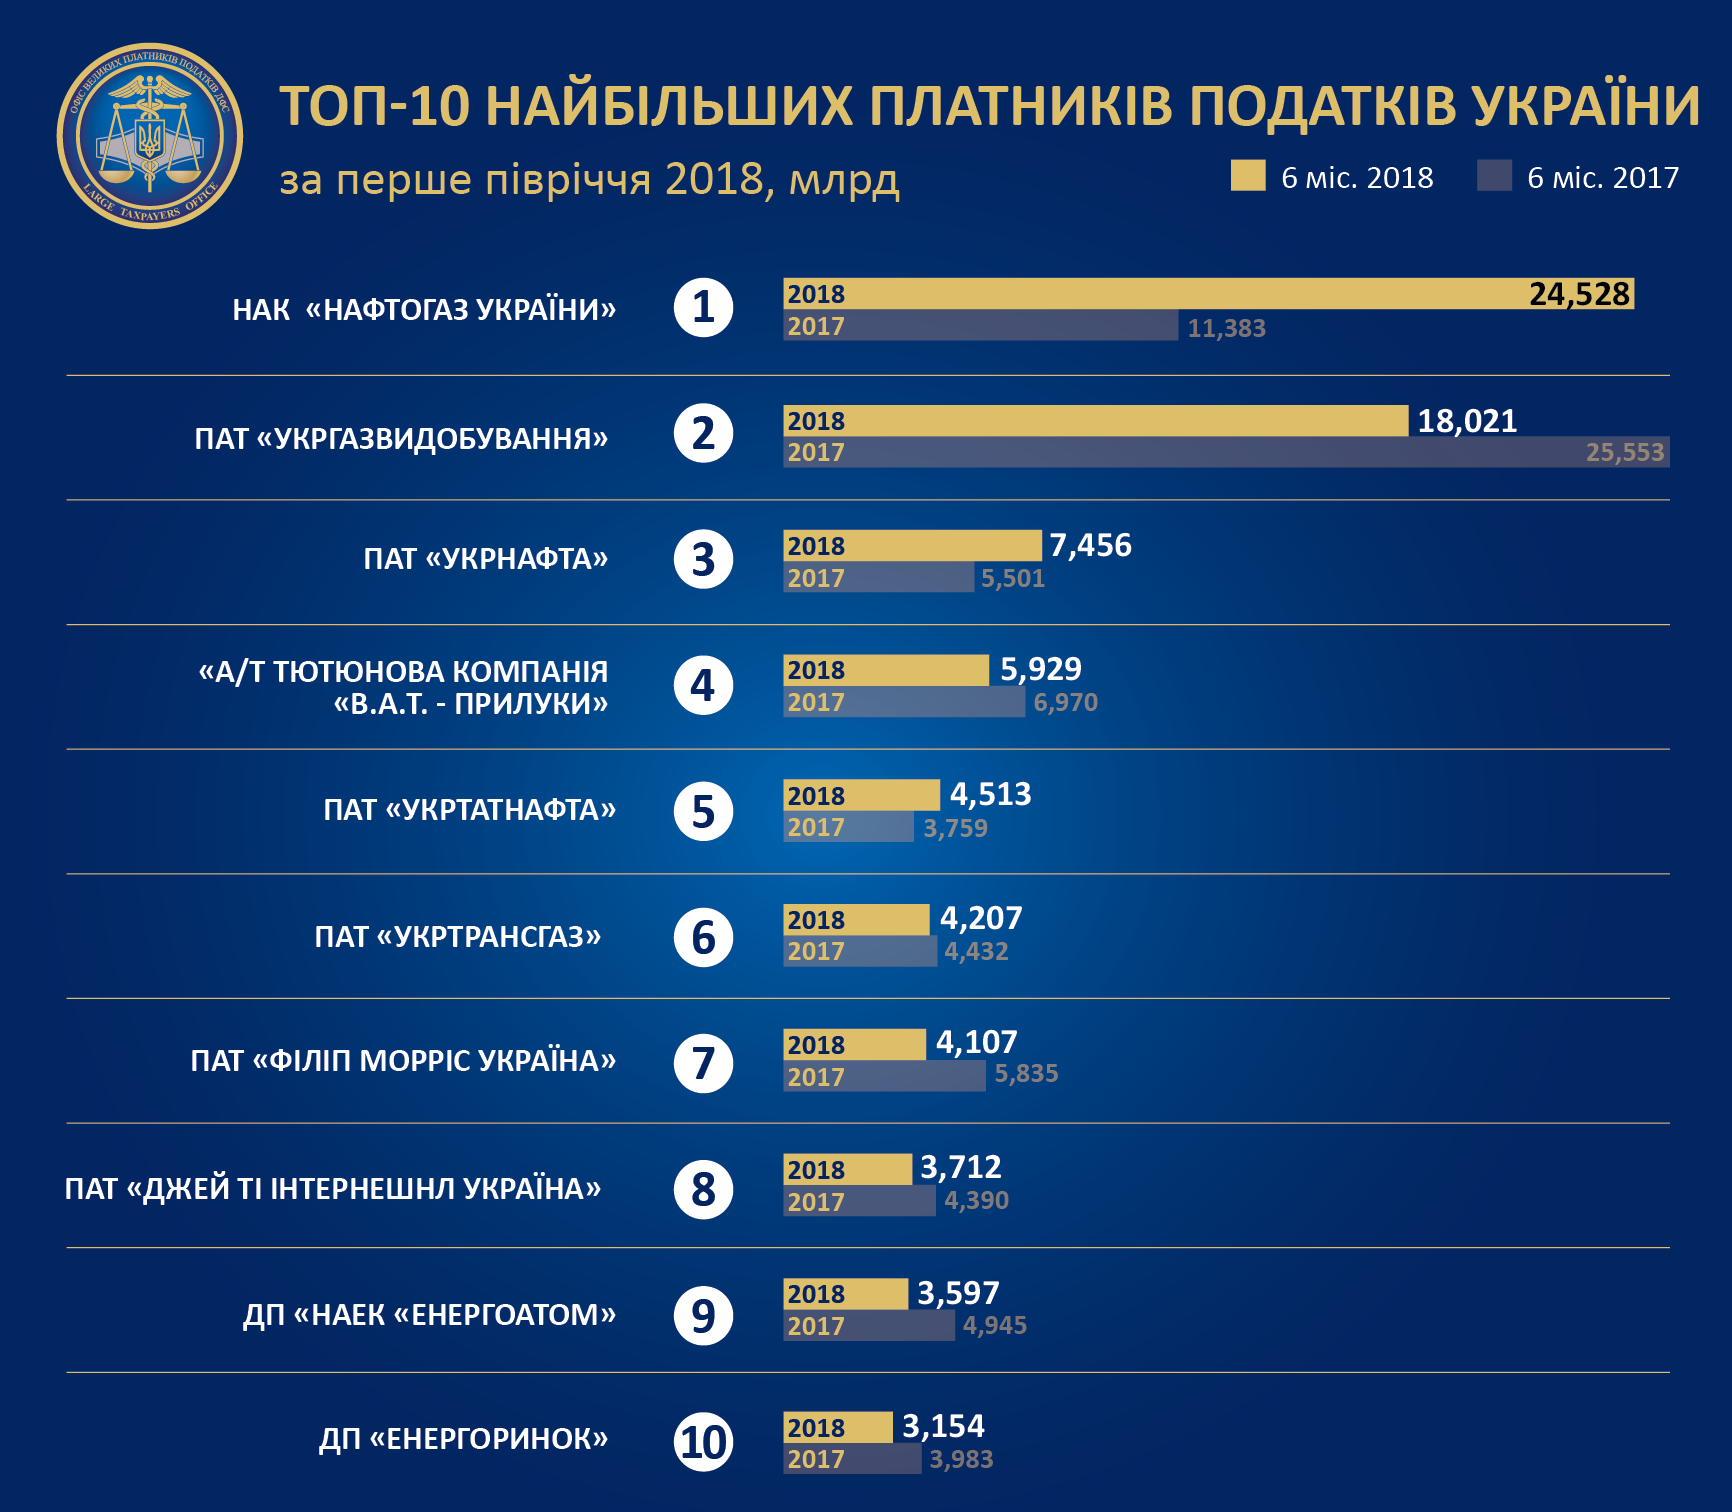 Нафта, газ, тютюн: в Україні визначили, які компанії заплатили найбільше податків